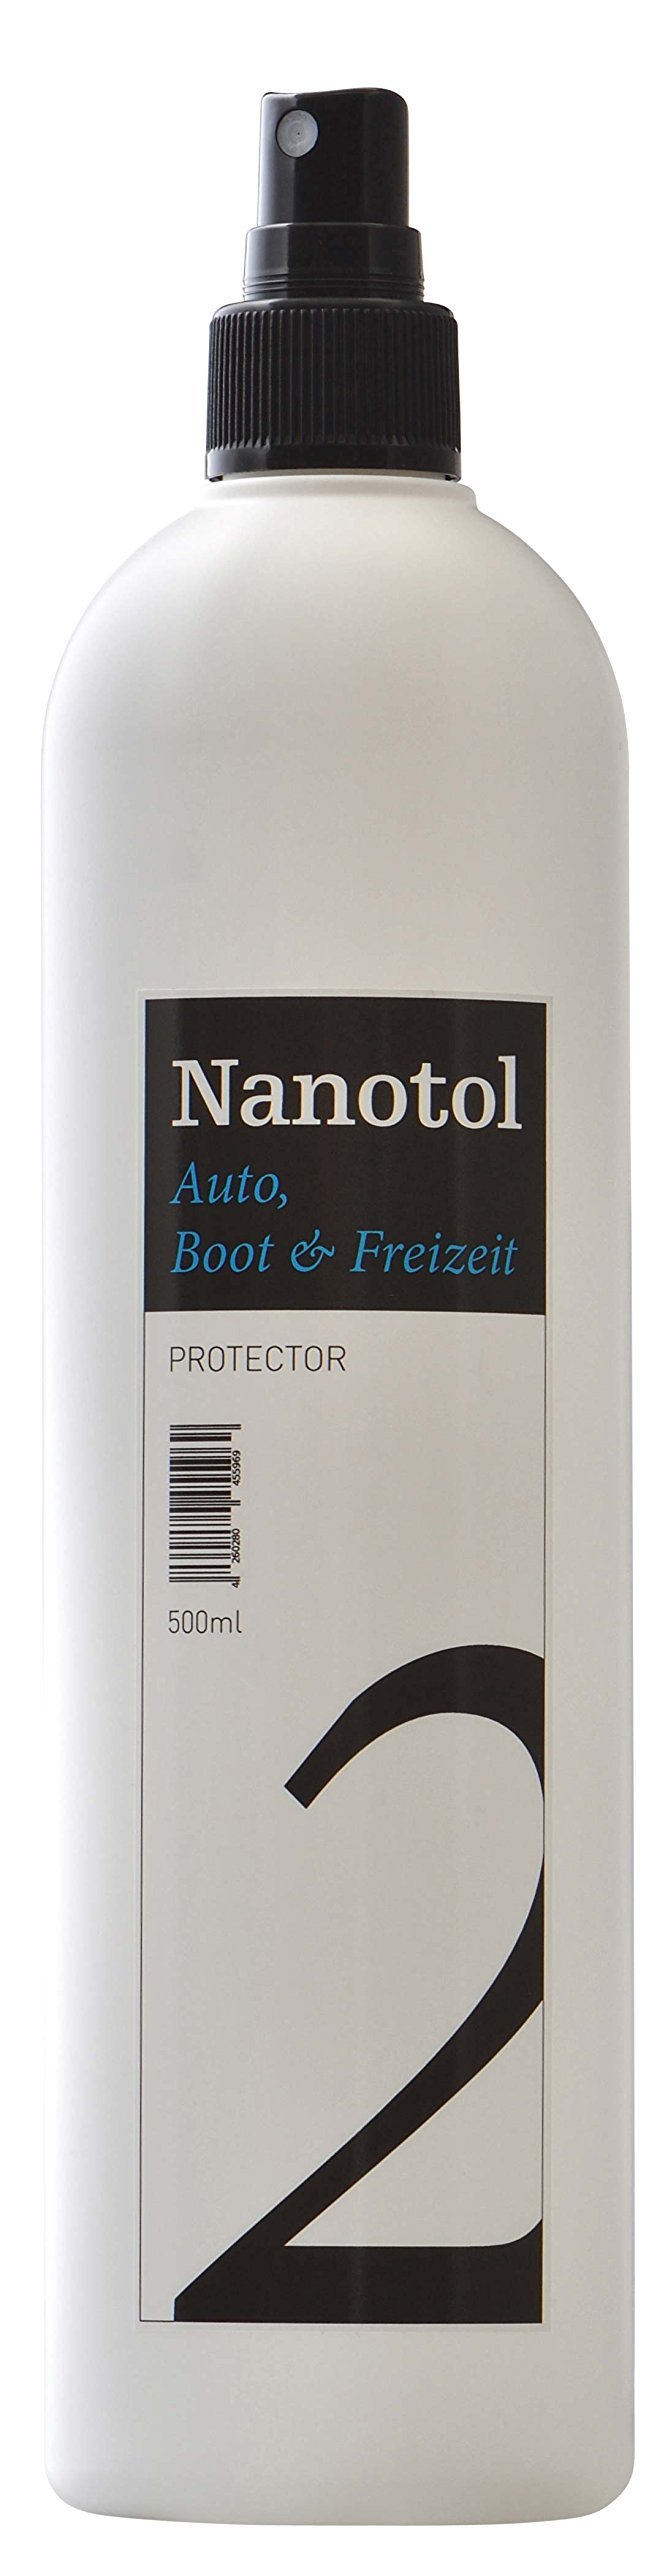 Nanotol Auto, Boot, Freizeit Protector 500 ml (80 m²) - Nanoversiegelung (Step 2) für Lack, Felgen, Autoglas - Glanzversiegelung Lackpflege Lotuseffekt Keramik-Polymer-Hybrid-Beschichtung von Nanotol